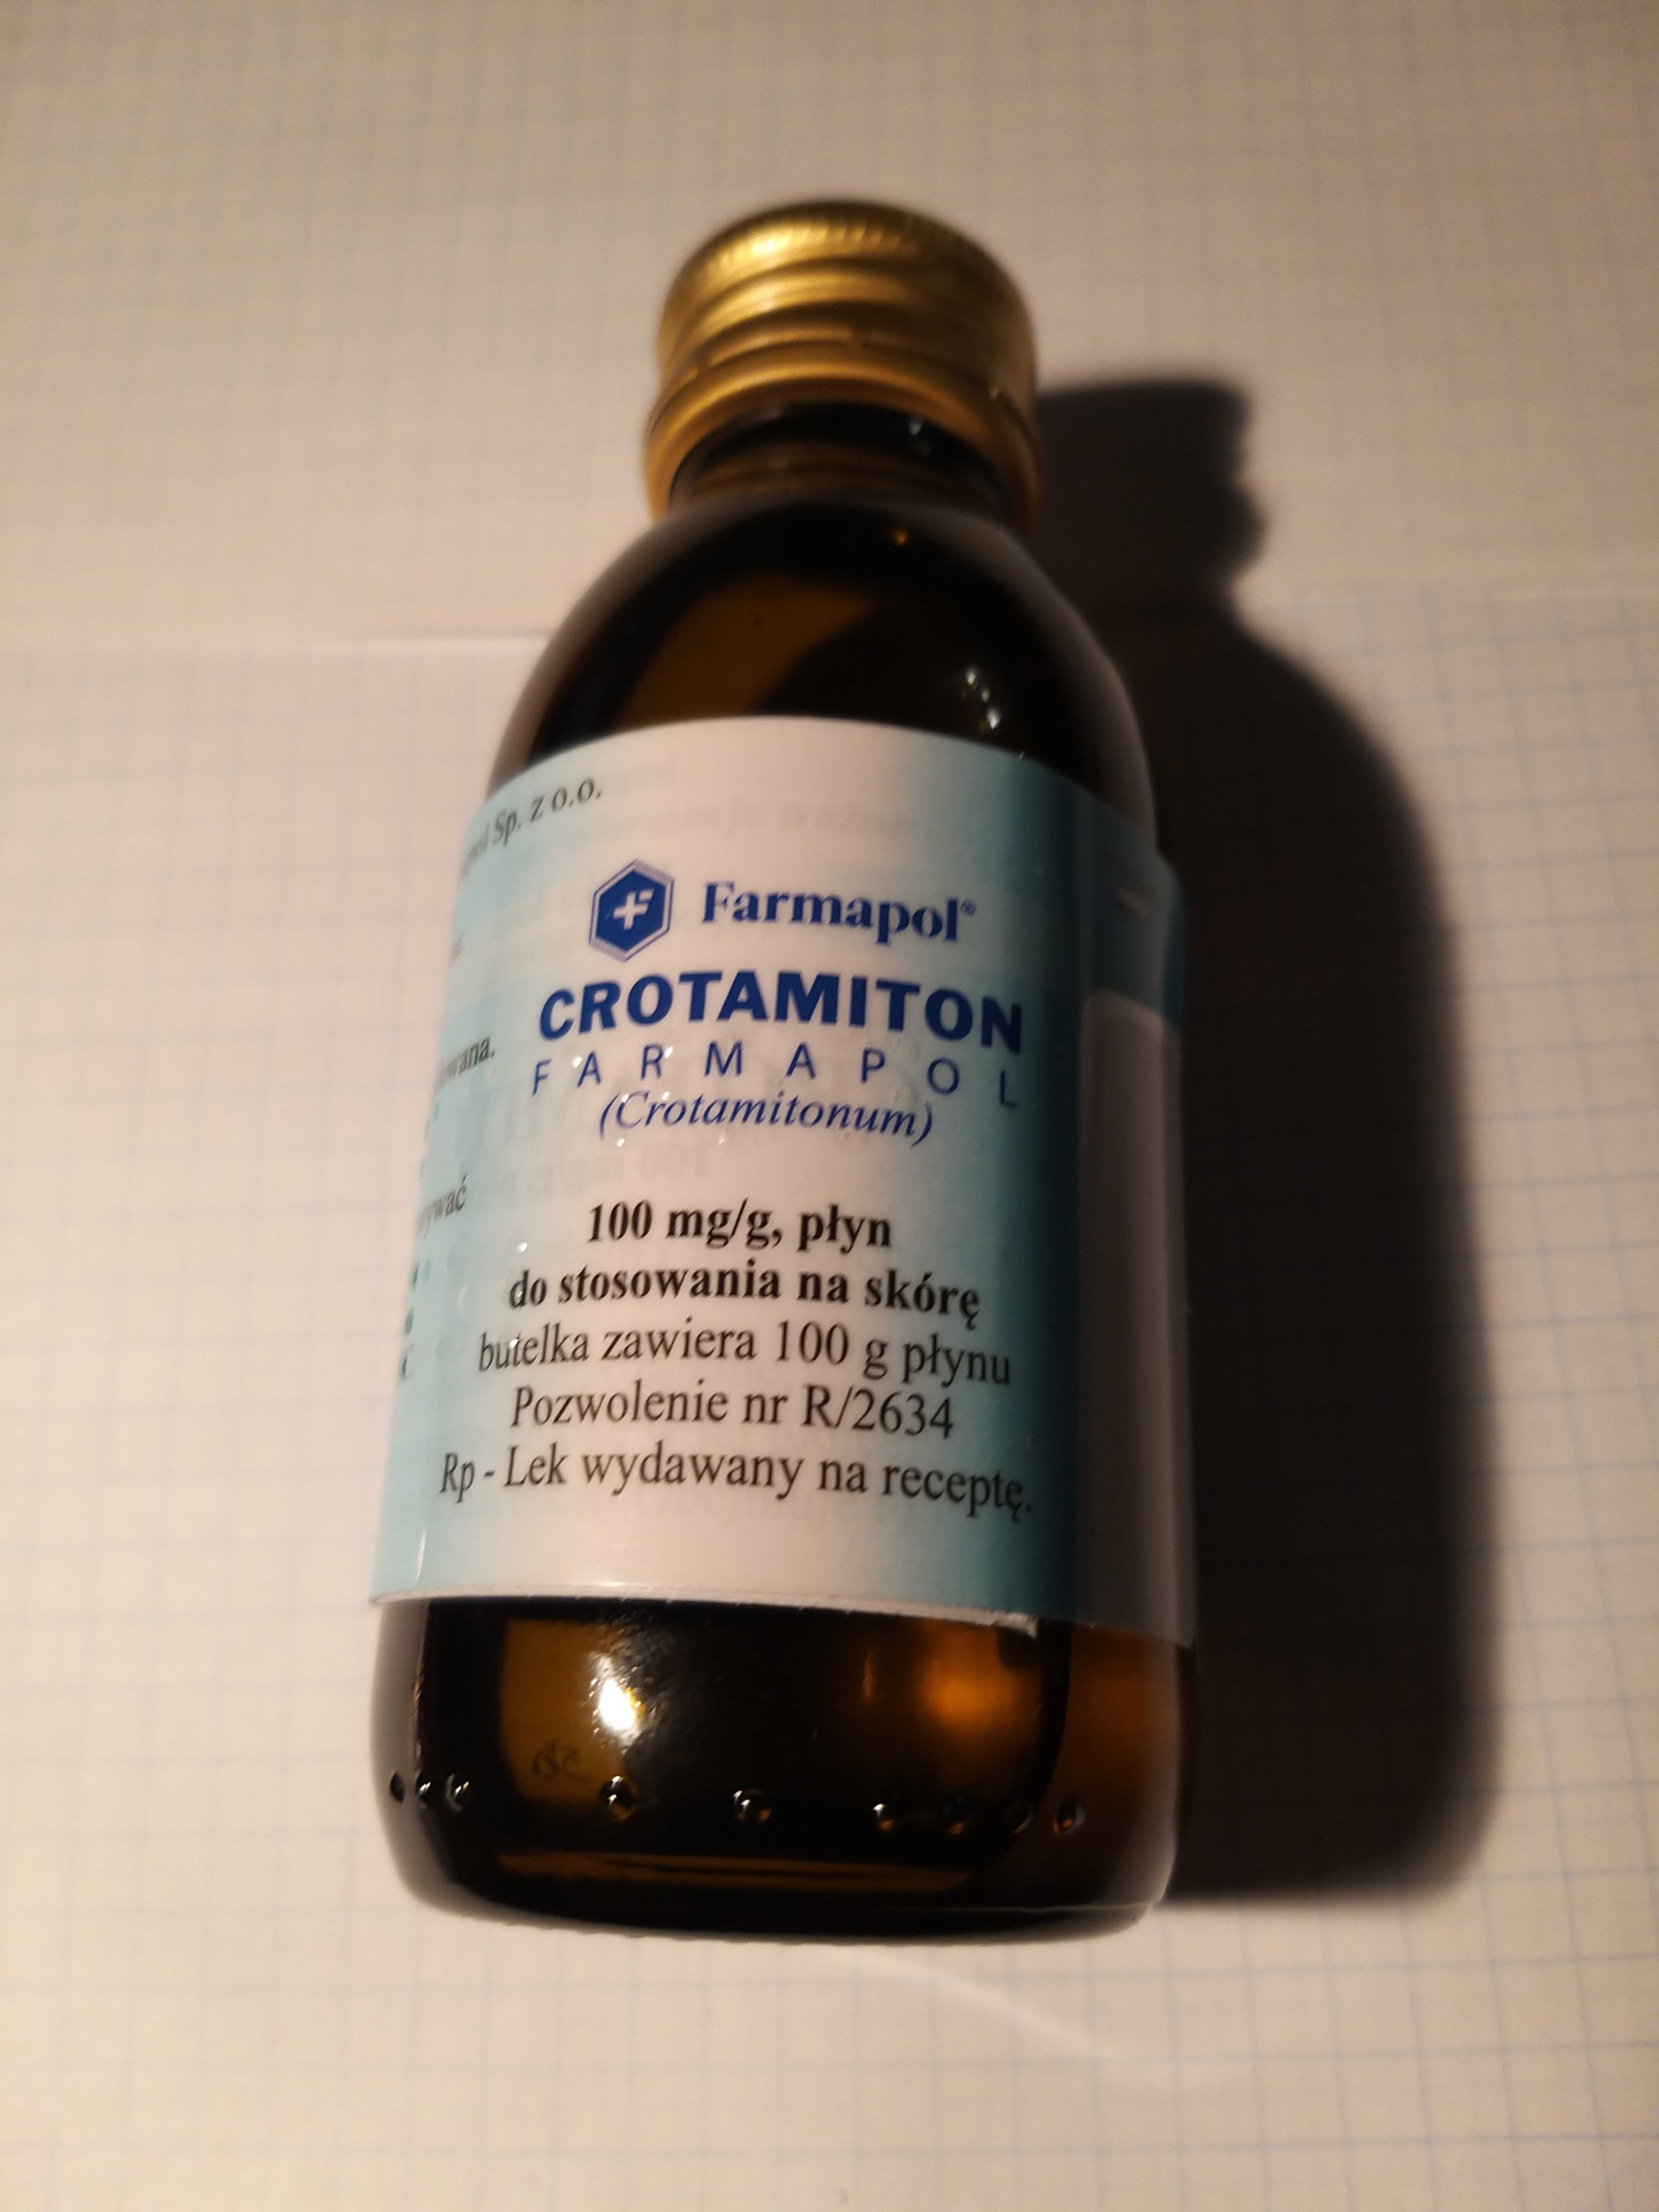 Crotamiton Farmapol 100mg/g -płyn na świerzb (nowy) 100g